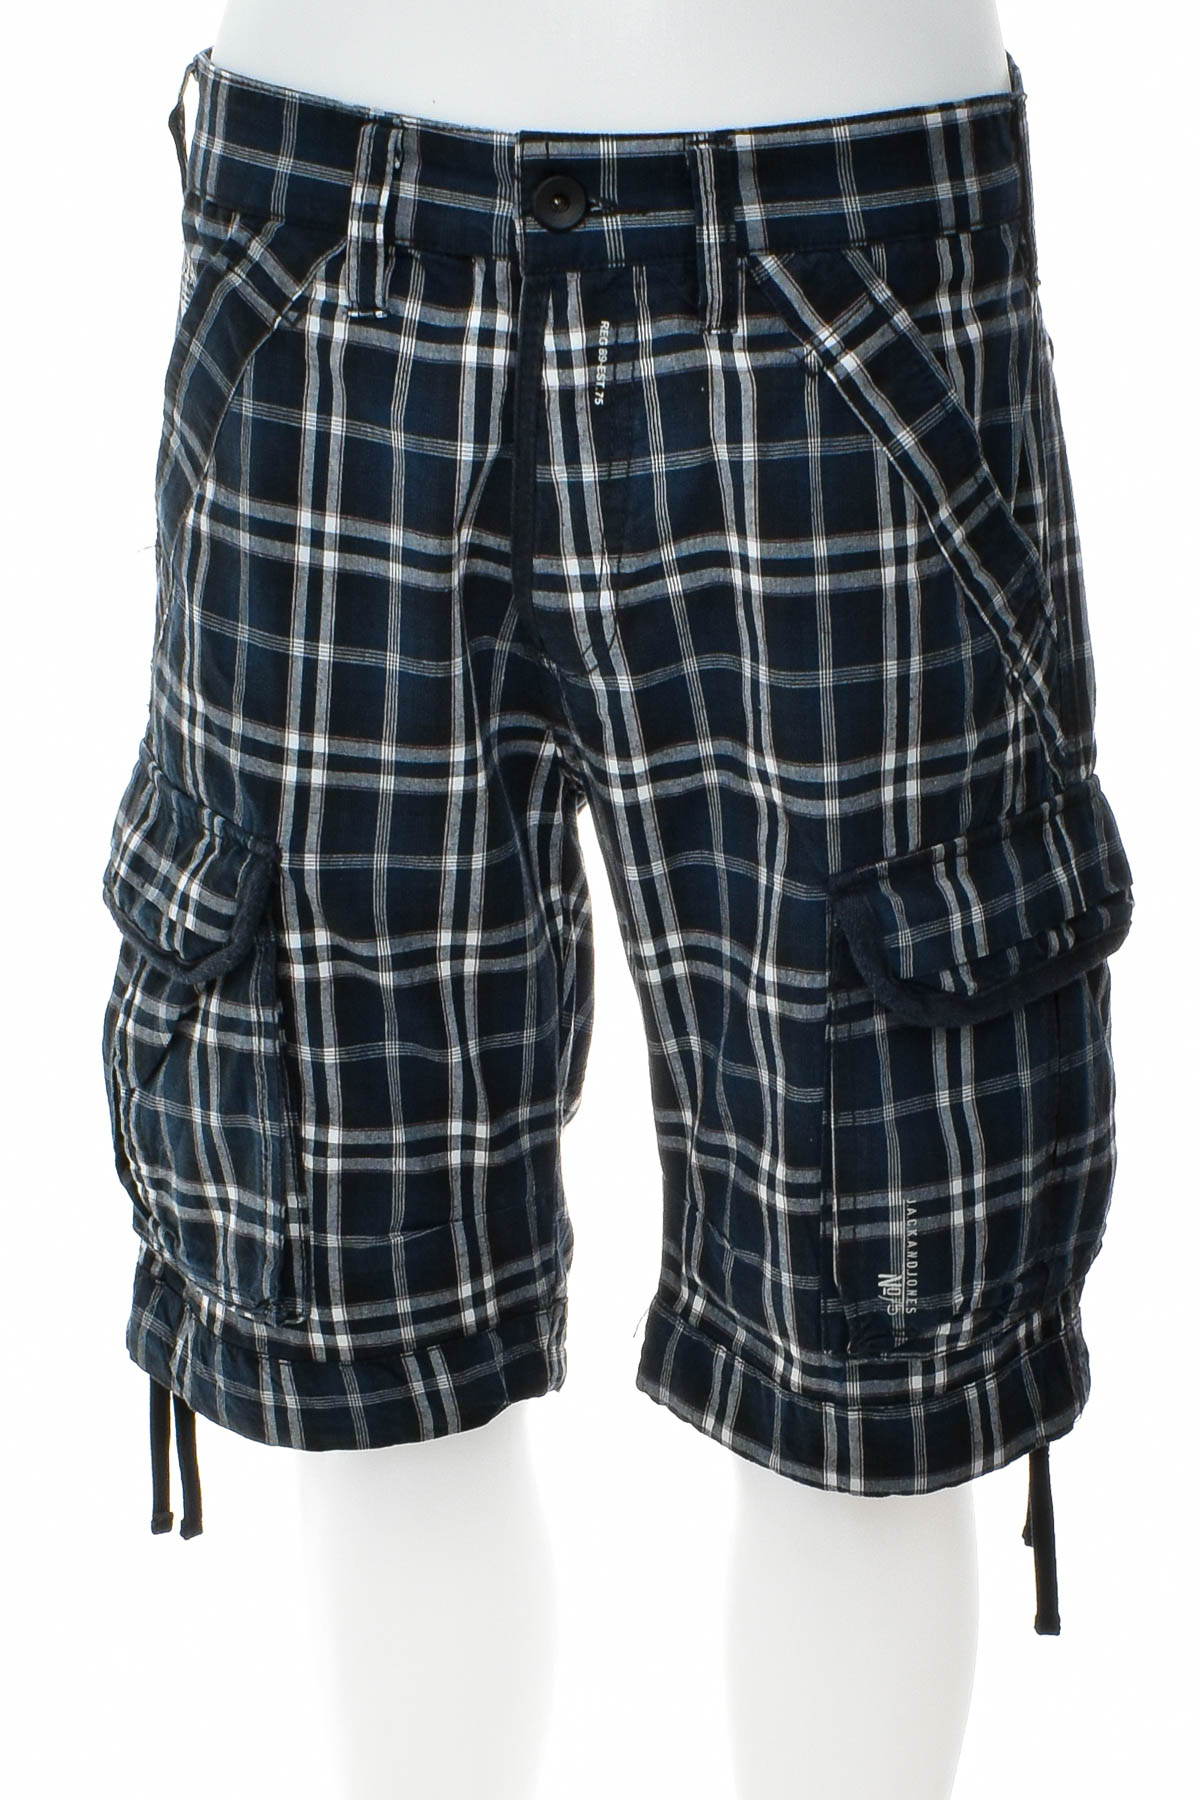 Men's shorts - JACK & JONES - 0